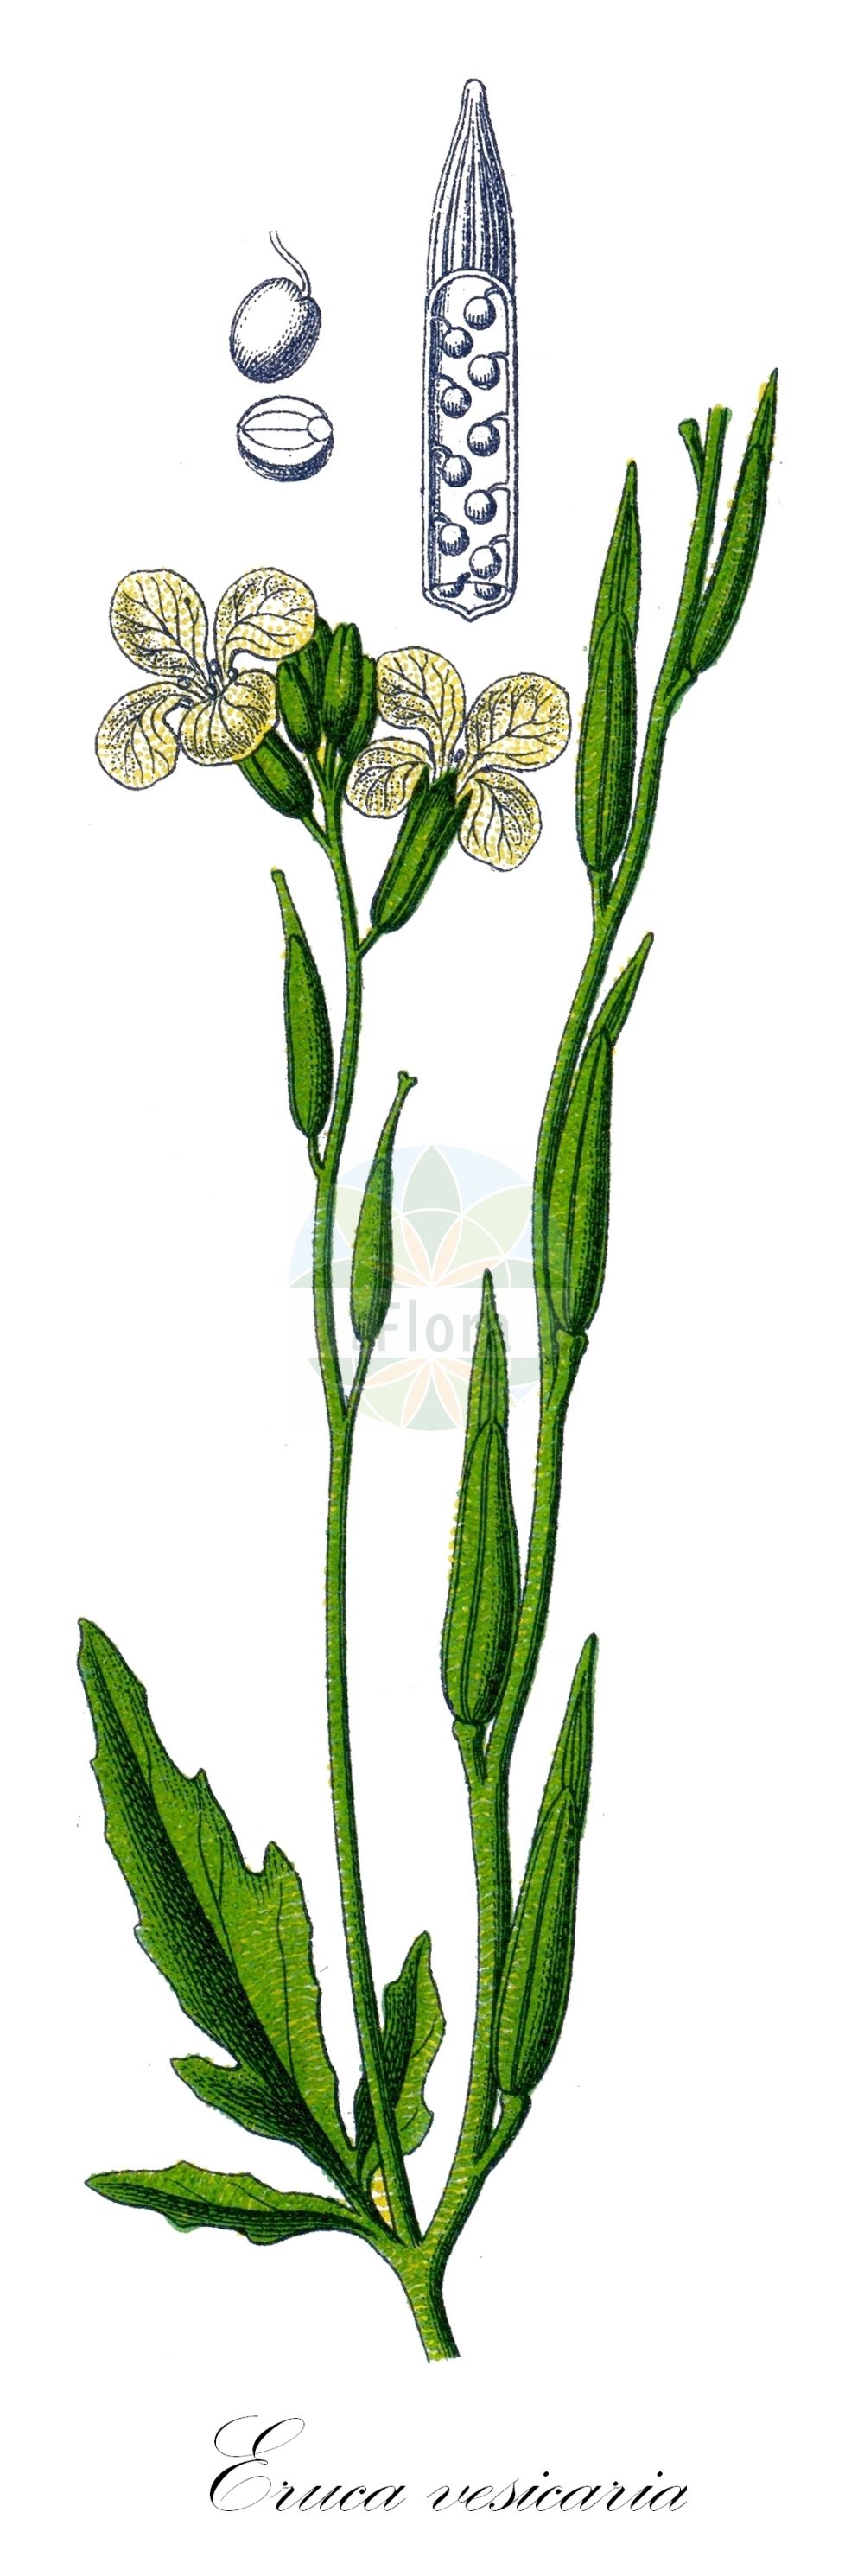 Historische Abbildung von Eruca vesicaria (Raukenkohl - Garden Rocket). Das Bild zeigt Blatt, Bluete, Frucht und Same. ---- Historical Drawing of Eruca vesicaria (Raukenkohl - Garden Rocket). The image is showing leaf, flower, fruit and seed.(Eruca vesicaria,Raukenkohl,Garden Rocket,Brassica erysimoides,Brassica hispida,Brassica pinnatifida,Brassica vesicaria,Eruca aurea,Eruca cappadocica,Eruca deserti,Eruca lanceolata,Eruca longirostris,Eruca orthosepala,Eruca pinnatifida,Eruca sativa,Eruca sativa Mill. var.,Eruca stenocarpa,Eruca vesicaria,Eruca vesicaria (L.) Cav.,Velleruca longistyla,Raukenkohl,Ruccola,Garden Rocket,Arugula,Hedge Mustard,Purple-vein Rocket,Rocket Salad,Salad Rocket,Eruca,Senfrauke,Rocketsalad,Brassicaceae,Kreuzblütler,Cabbage family,Blatt,Bluete,Frucht,Same,leaf,flower,fruit,seed,Sturm (1796f))